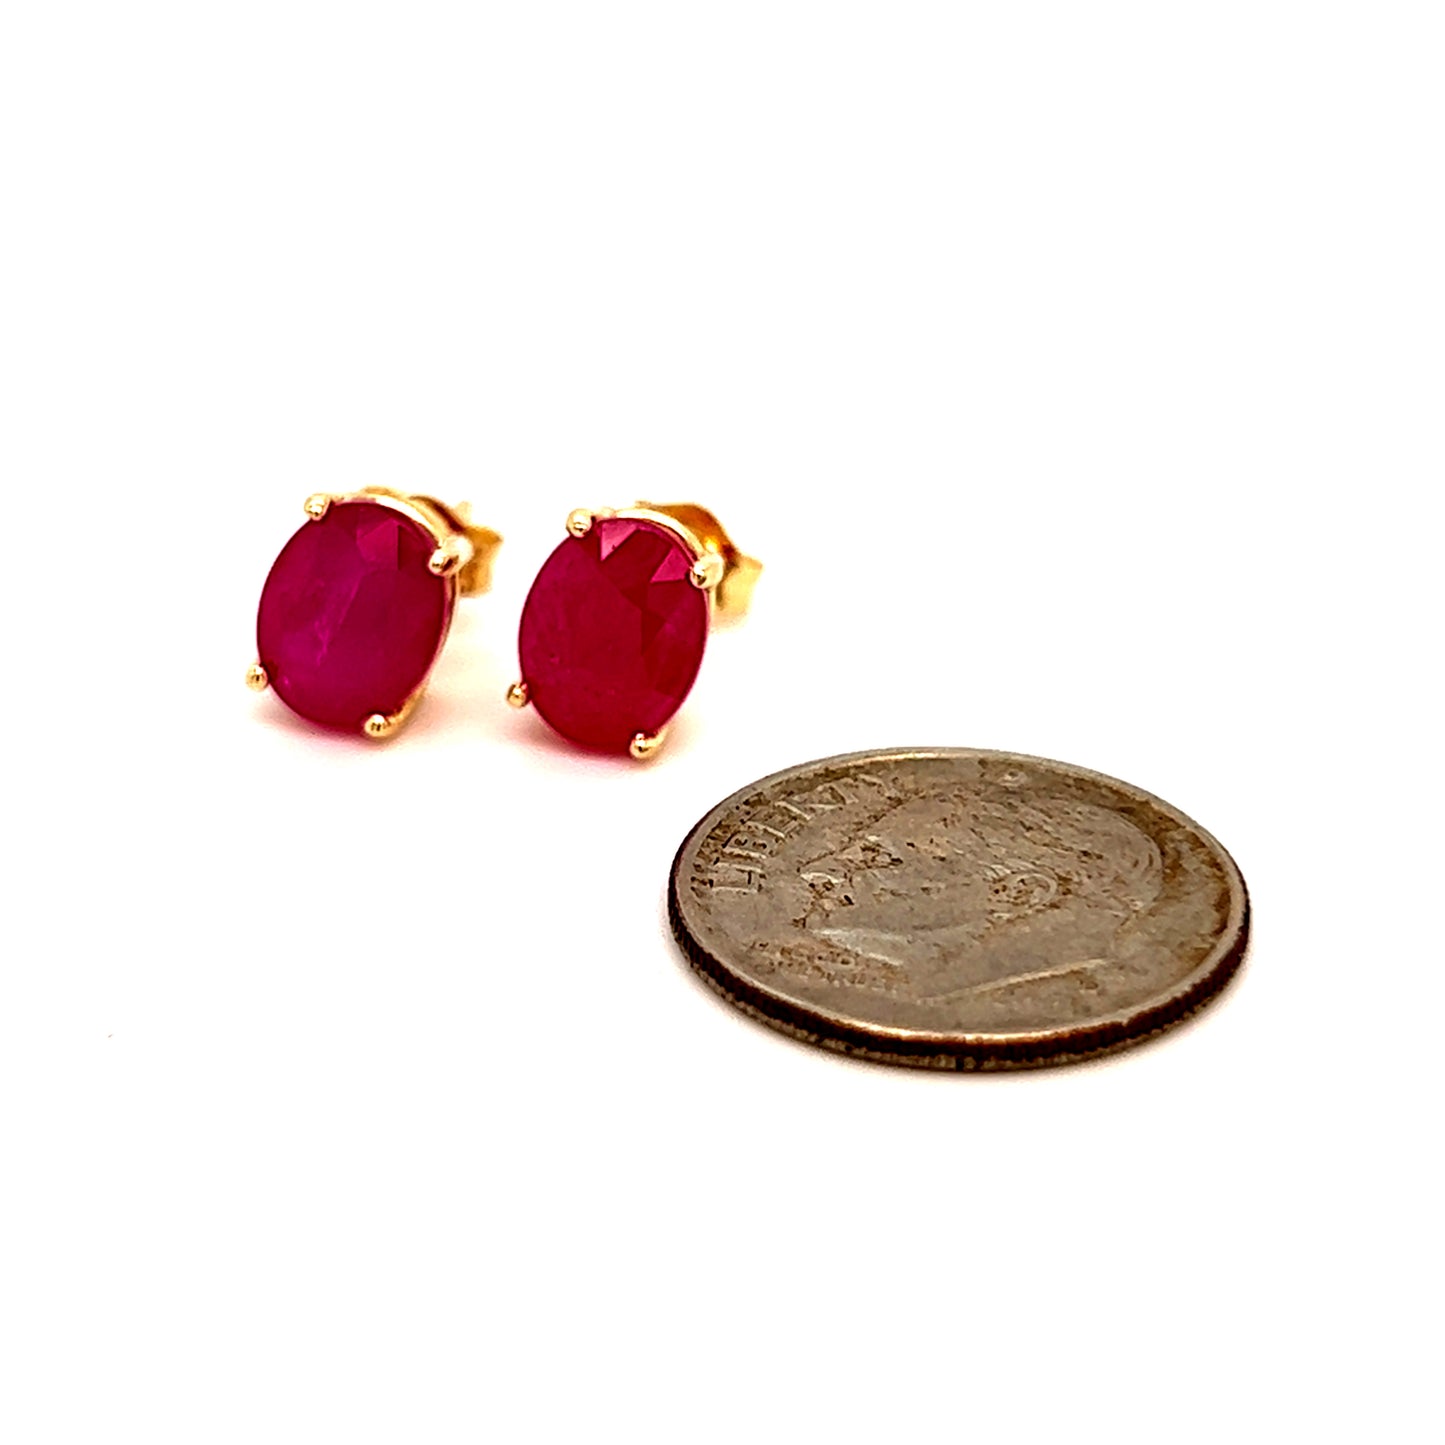 Oval Shape Ruby Stud Earrings 14k Y Gold 4.03 TCW Certified $3,590 211163 - Certified Fine Jewelry